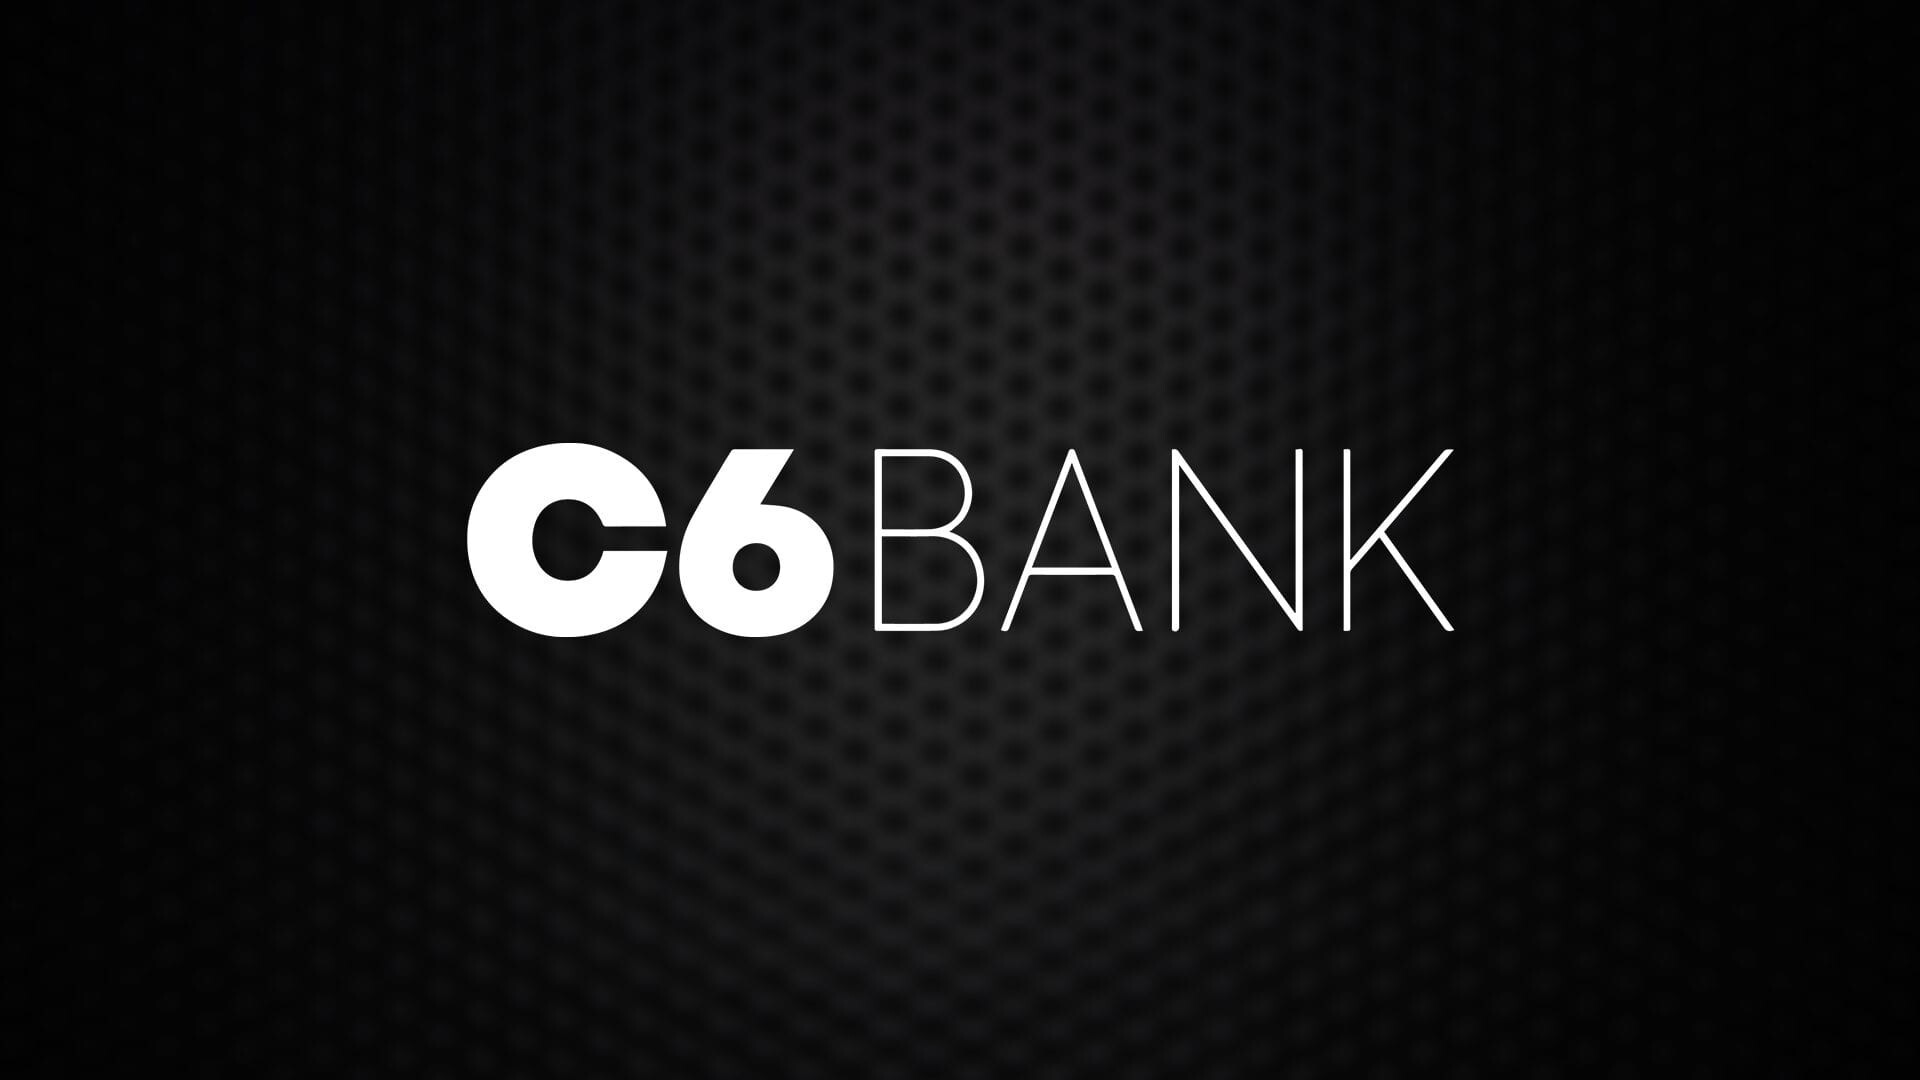 C6 Bank anuncia GRANDE PRESENTE para quem gosta de VIAJAR